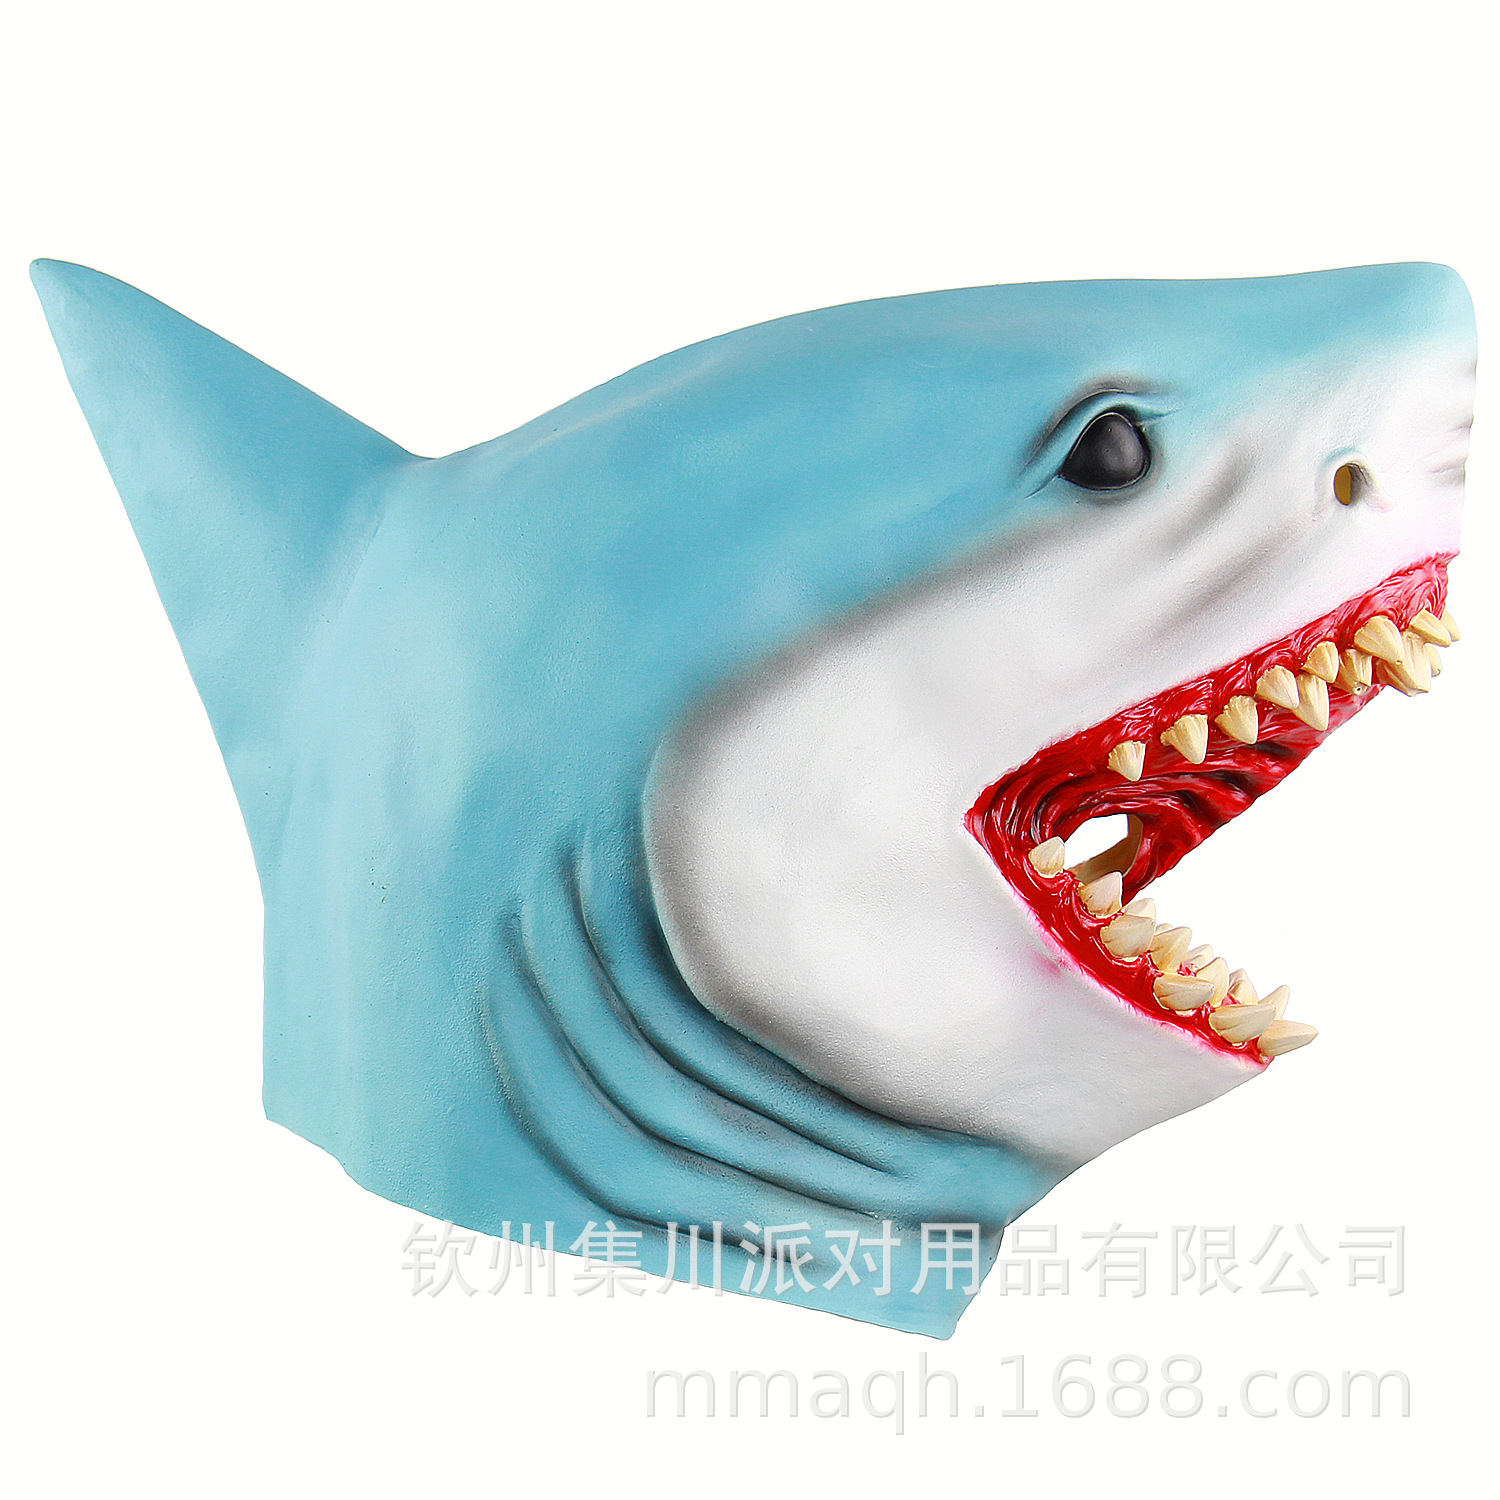 鲨鱼面具手工制作图片